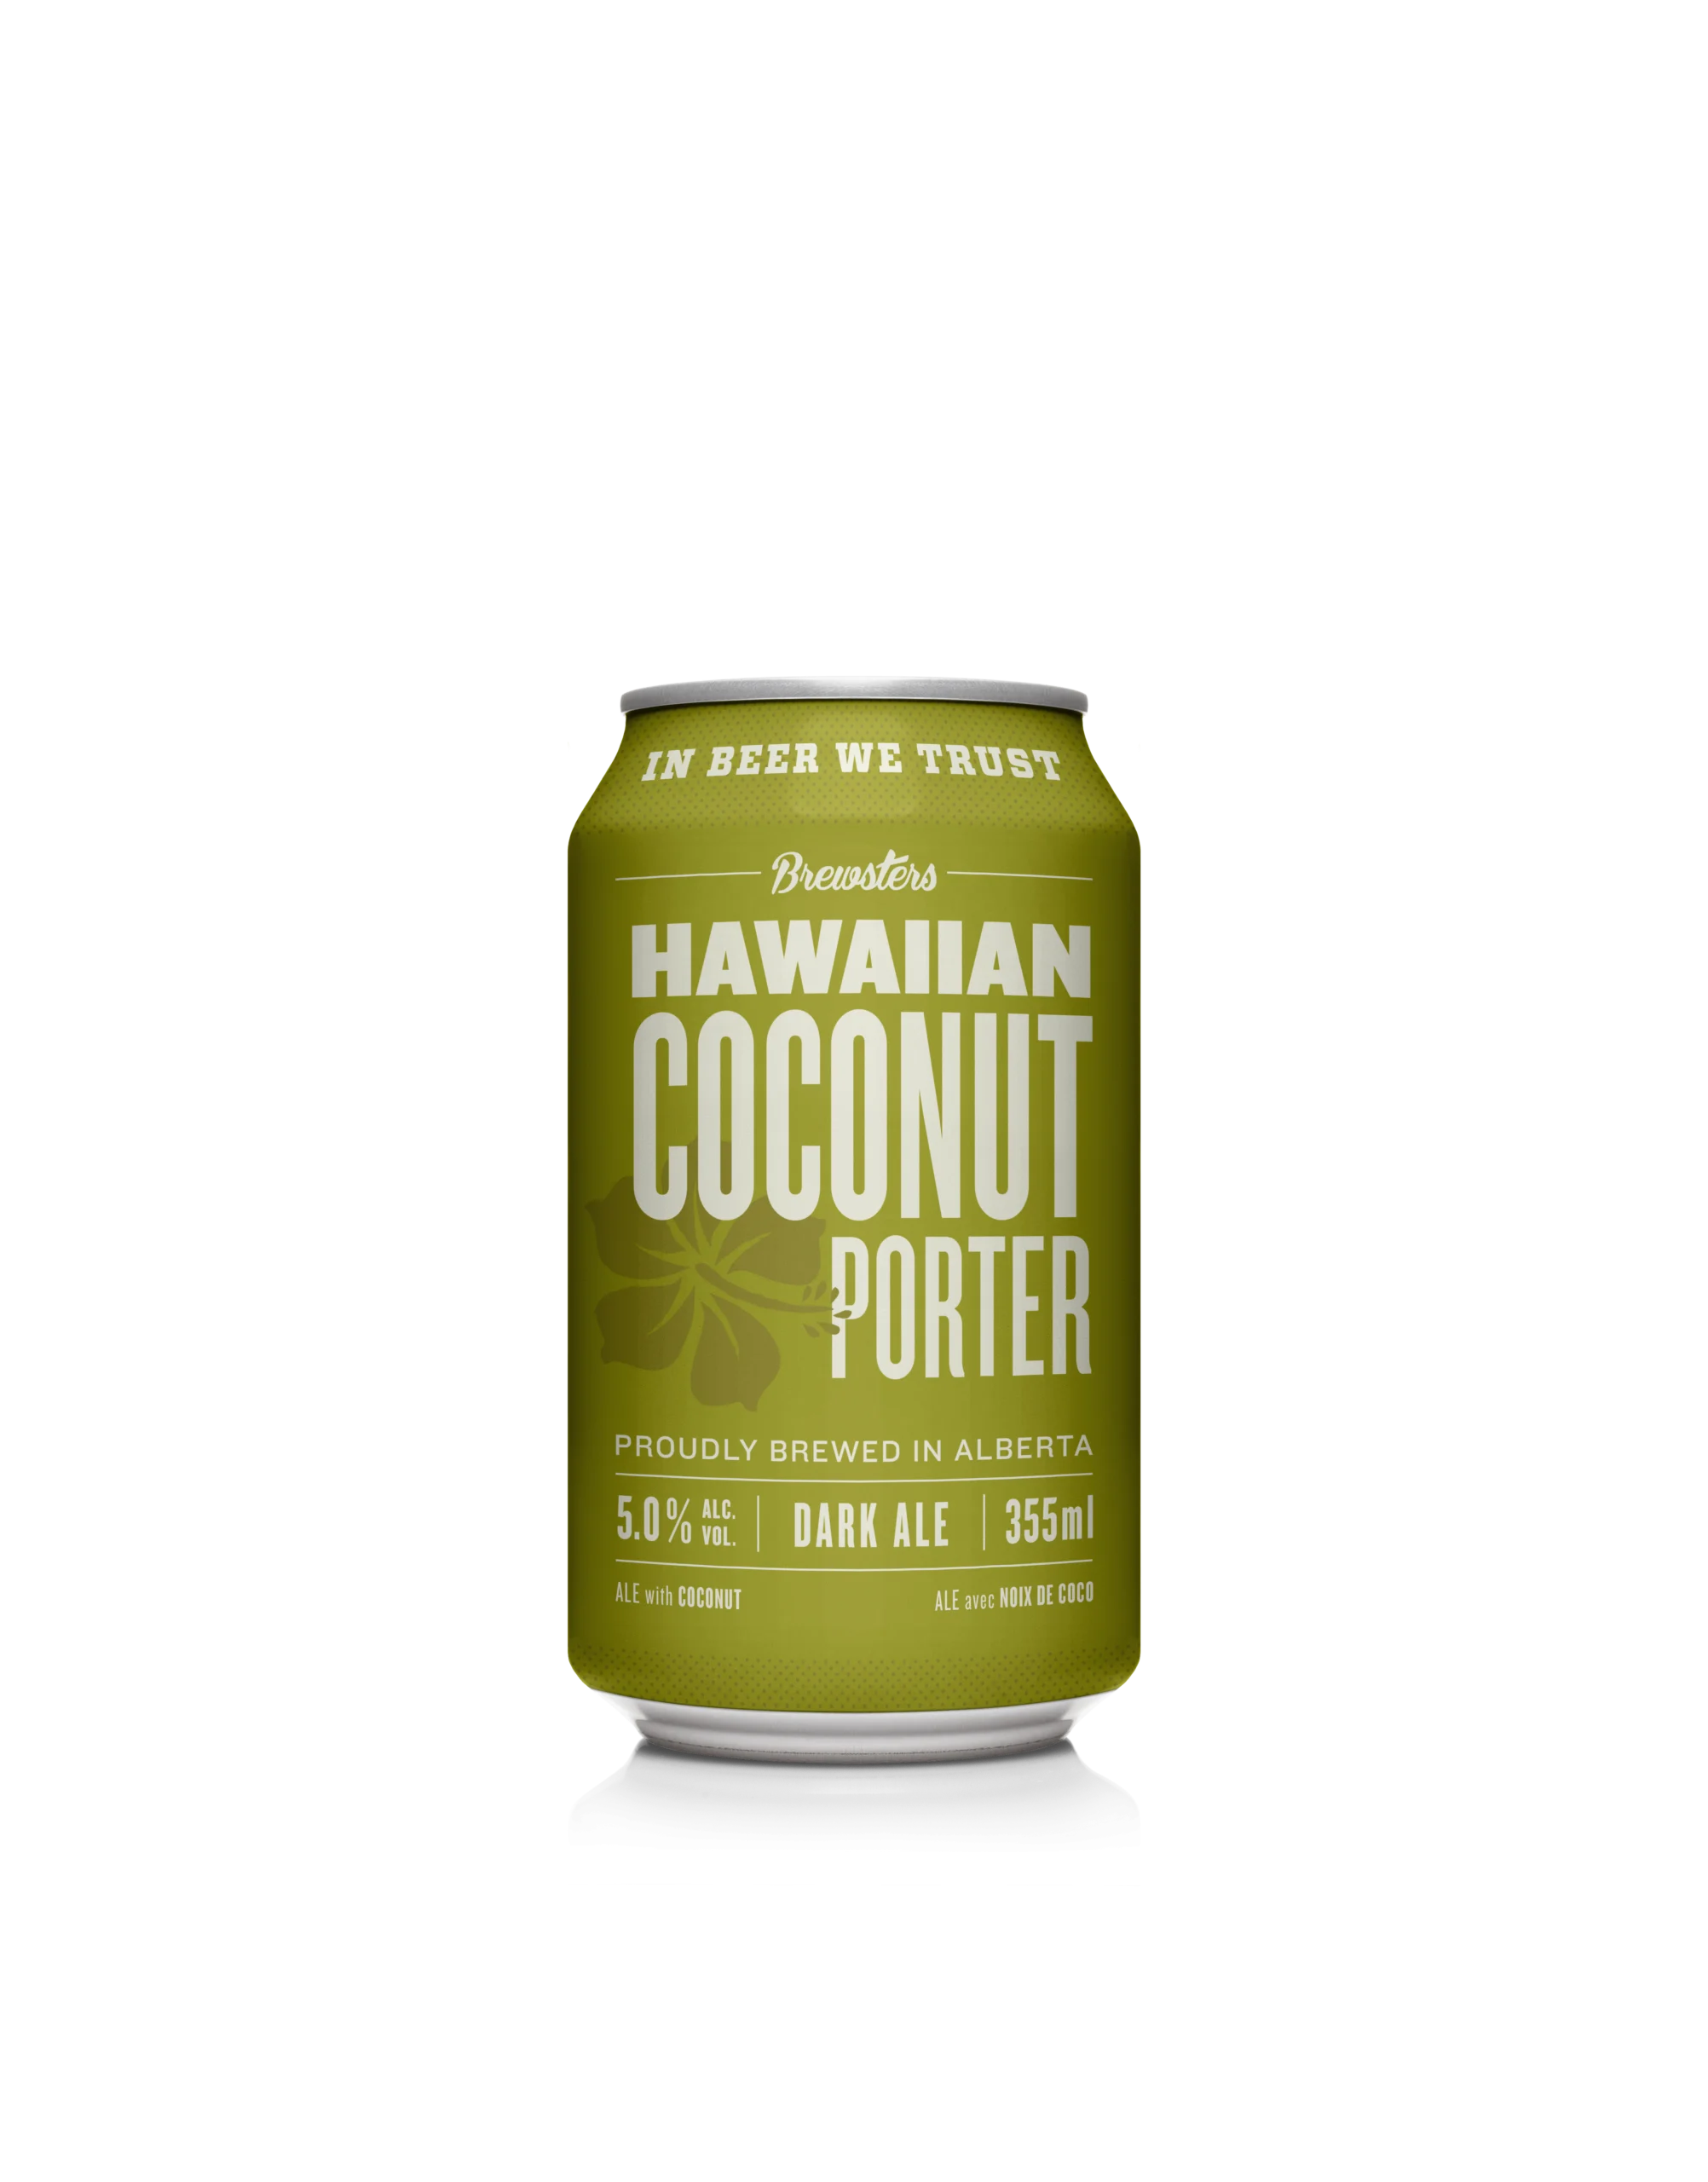 Coconut Porter beer can render